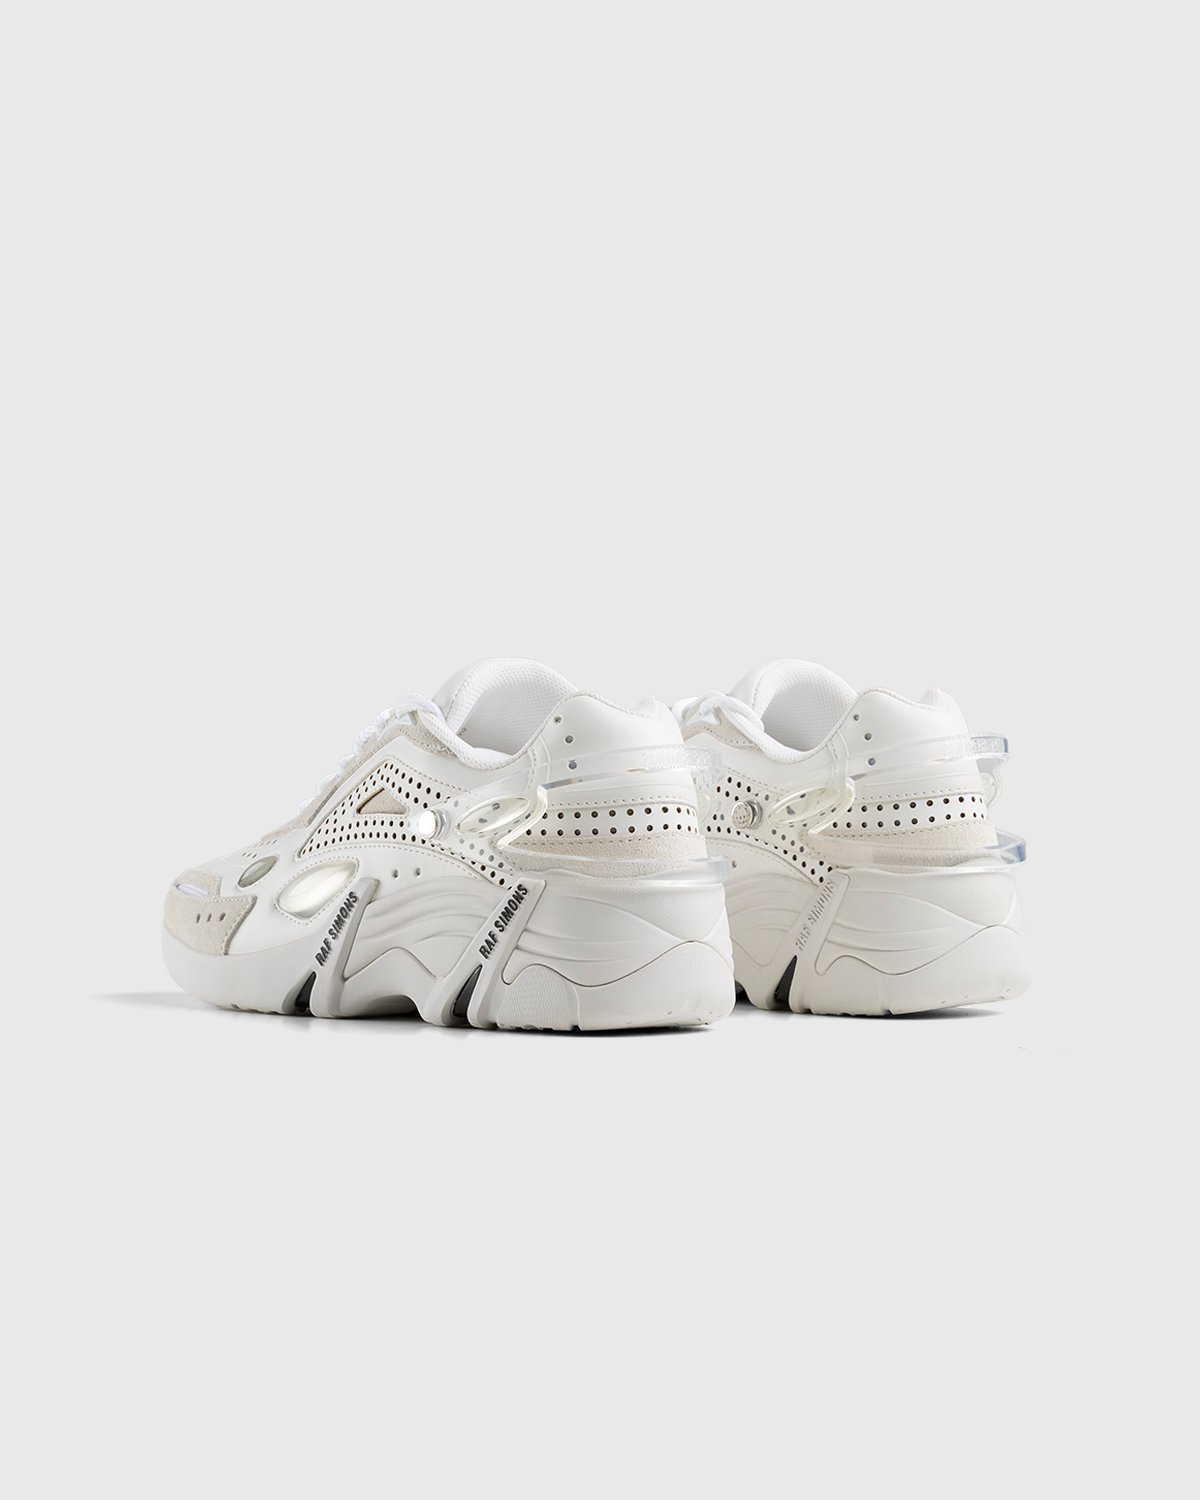 Raf Simons - Cylon 21 White - Footwear - White - Image 4